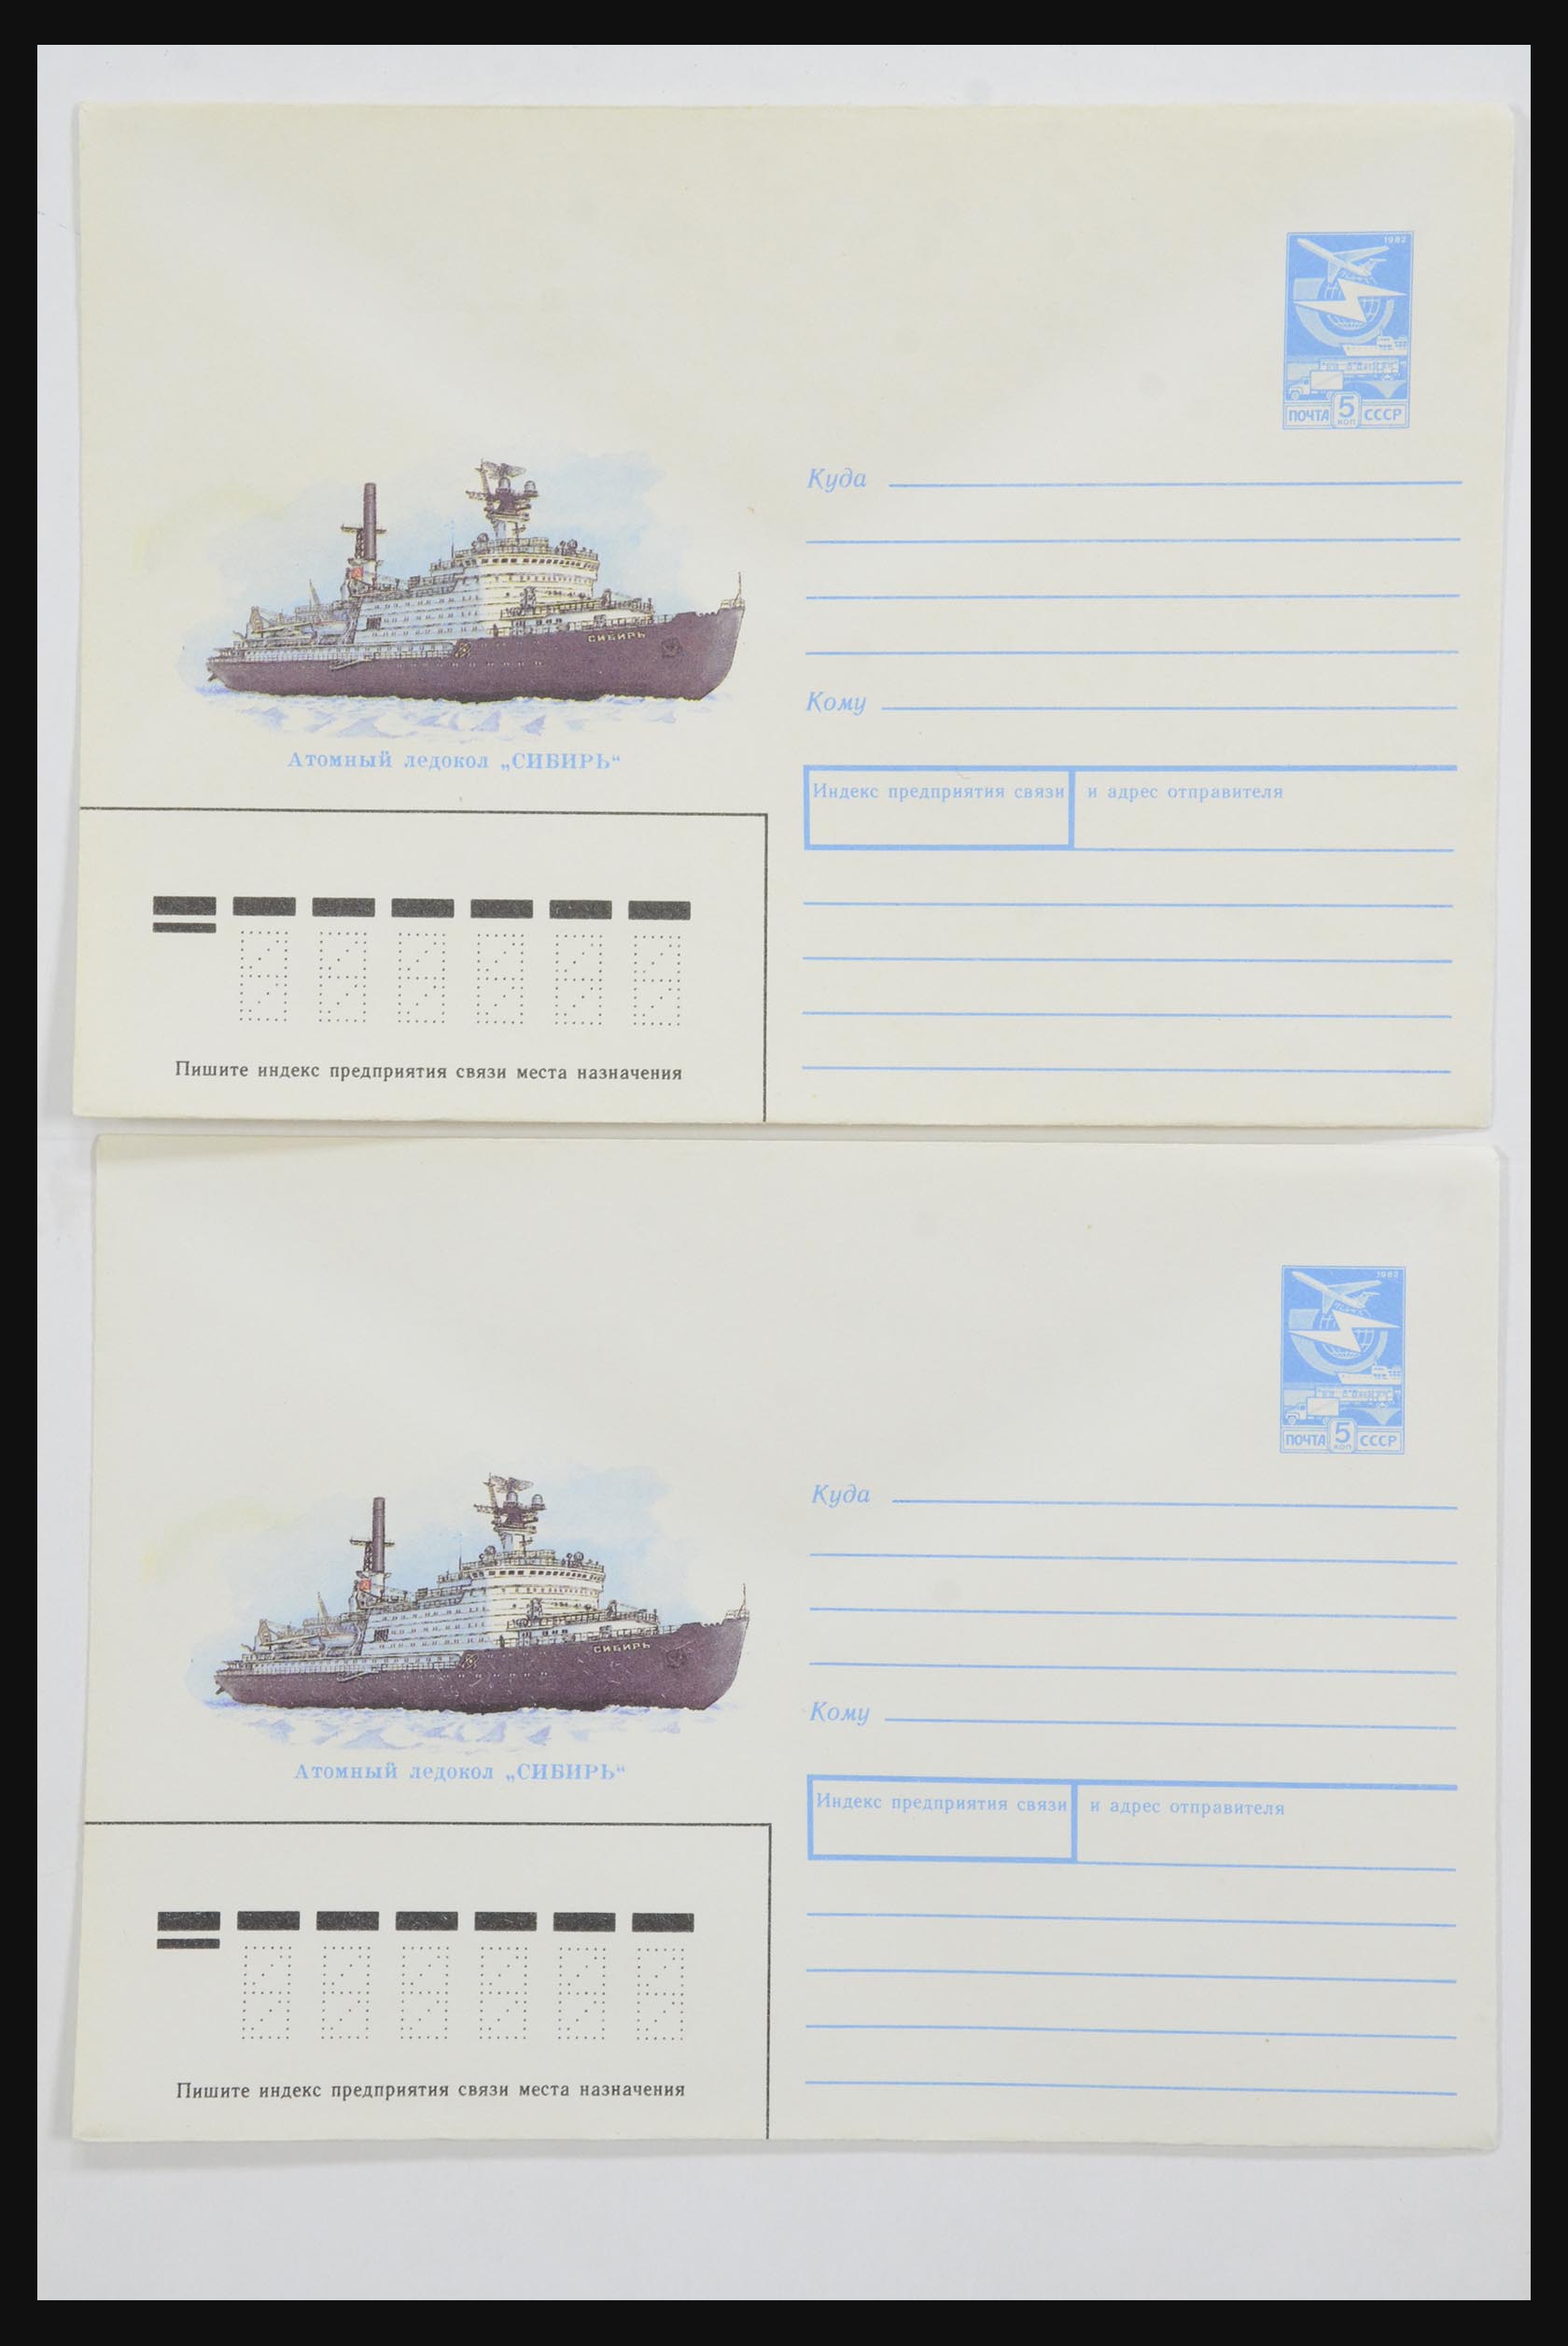 31928 0032 - 31928 Oost Europa brieven jaren 60/90.